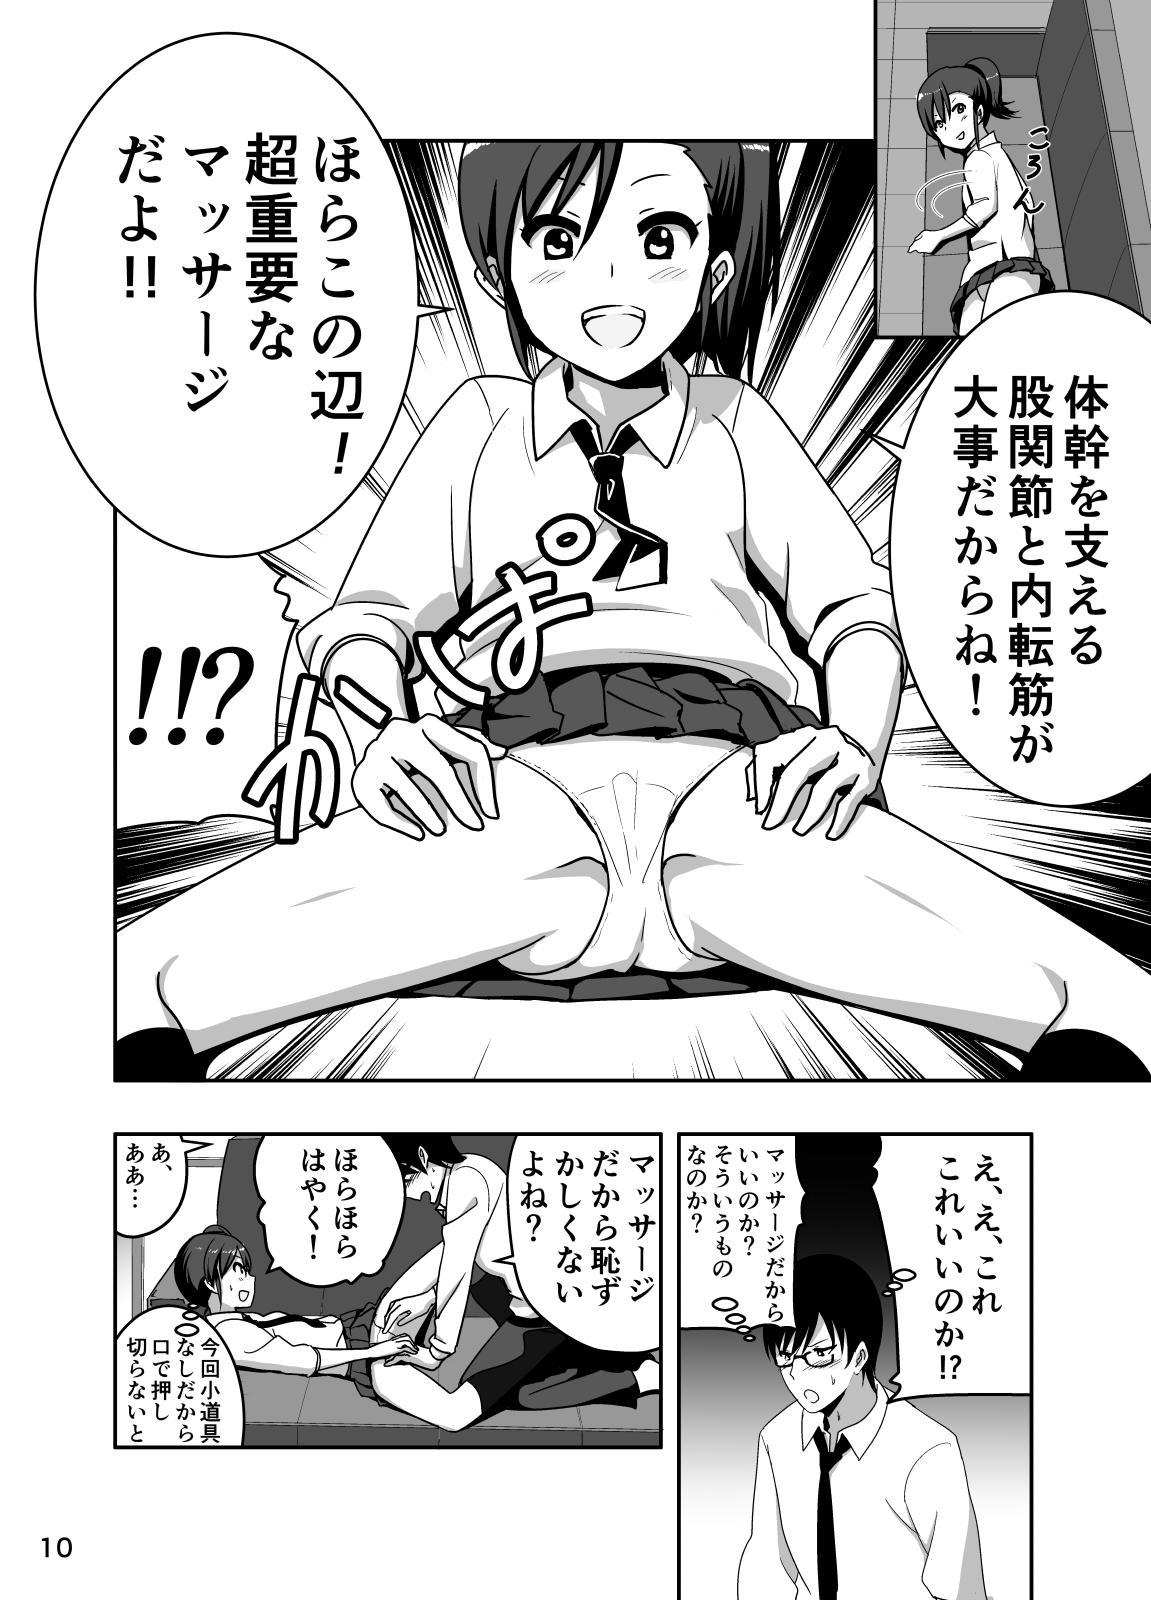 Sextape Mami Manga 3 - The idolmaster Amante - Page 10